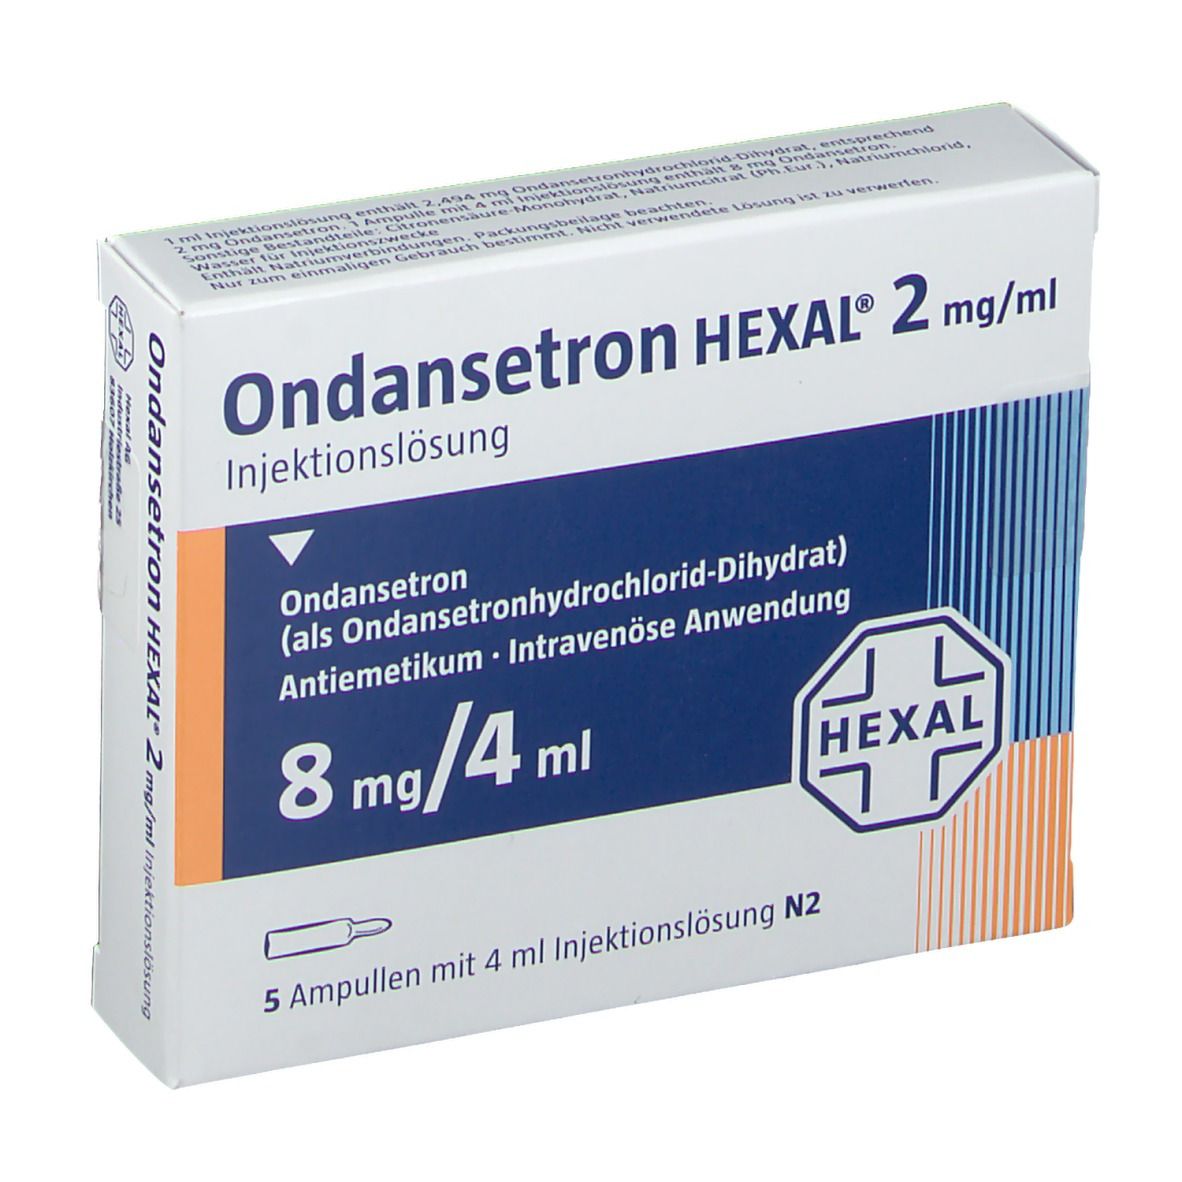 Ondansetron HEXAL® 8 mg